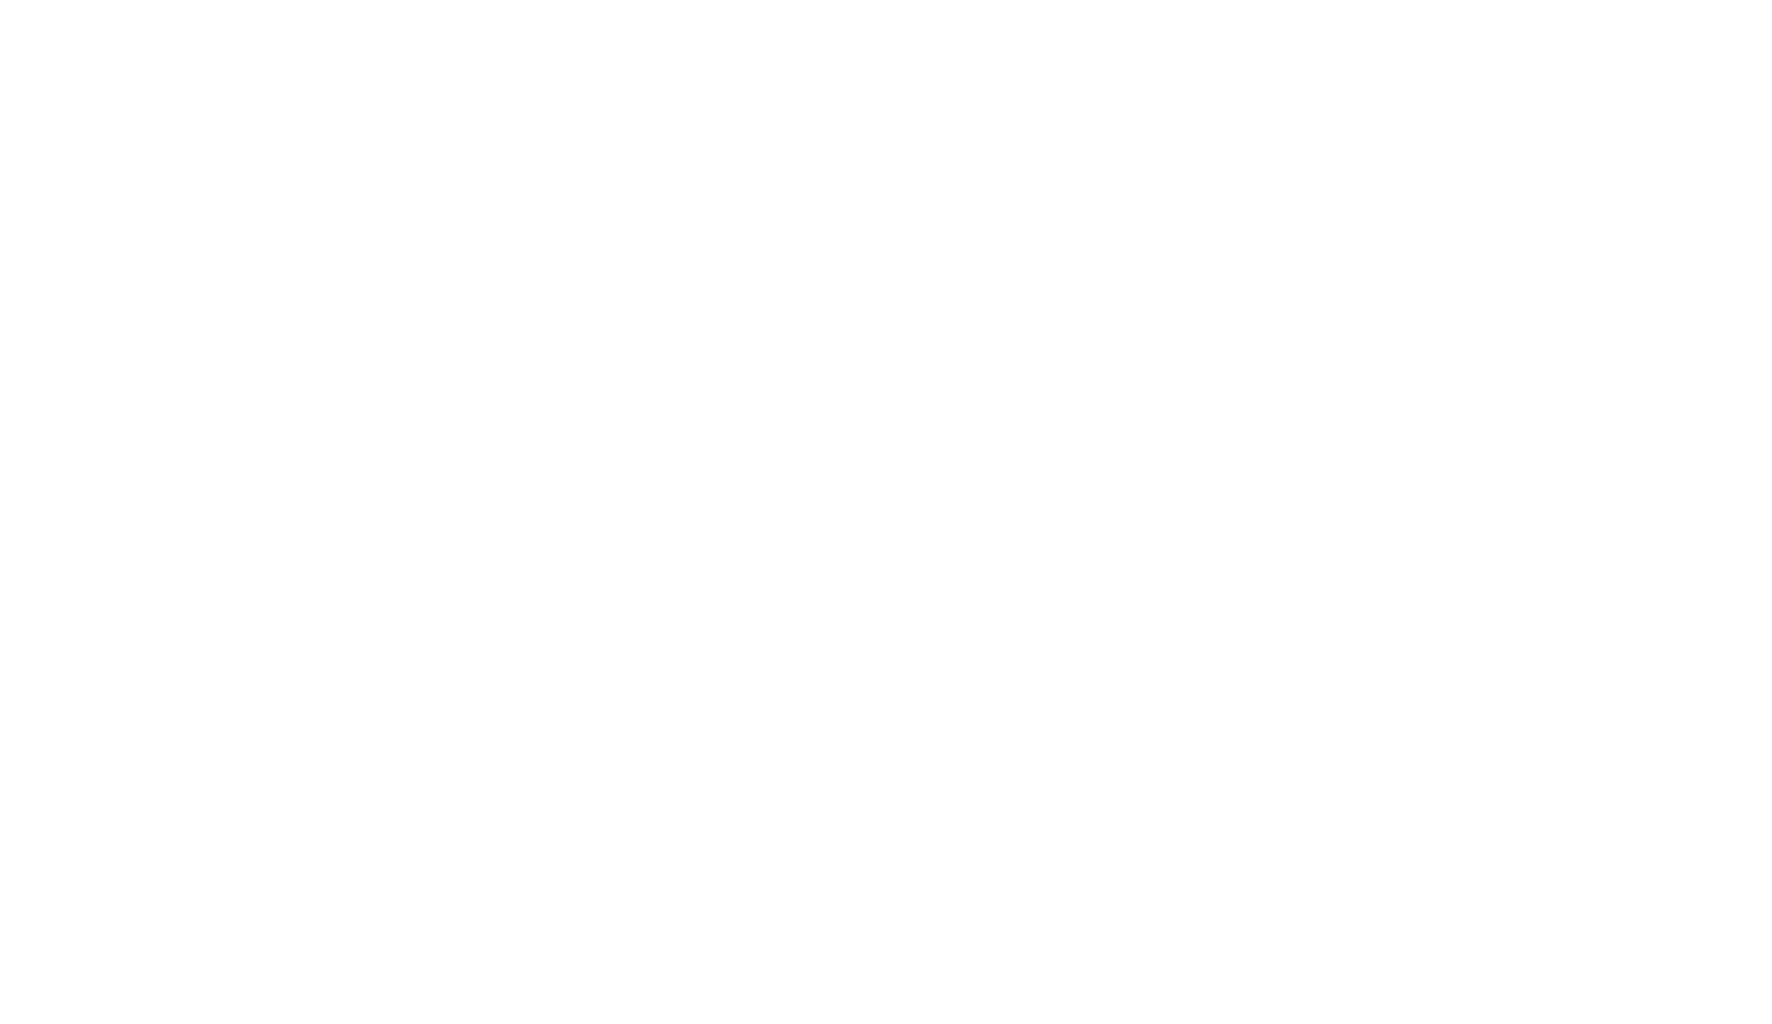 L_Moeke_Delft_DIAP.png